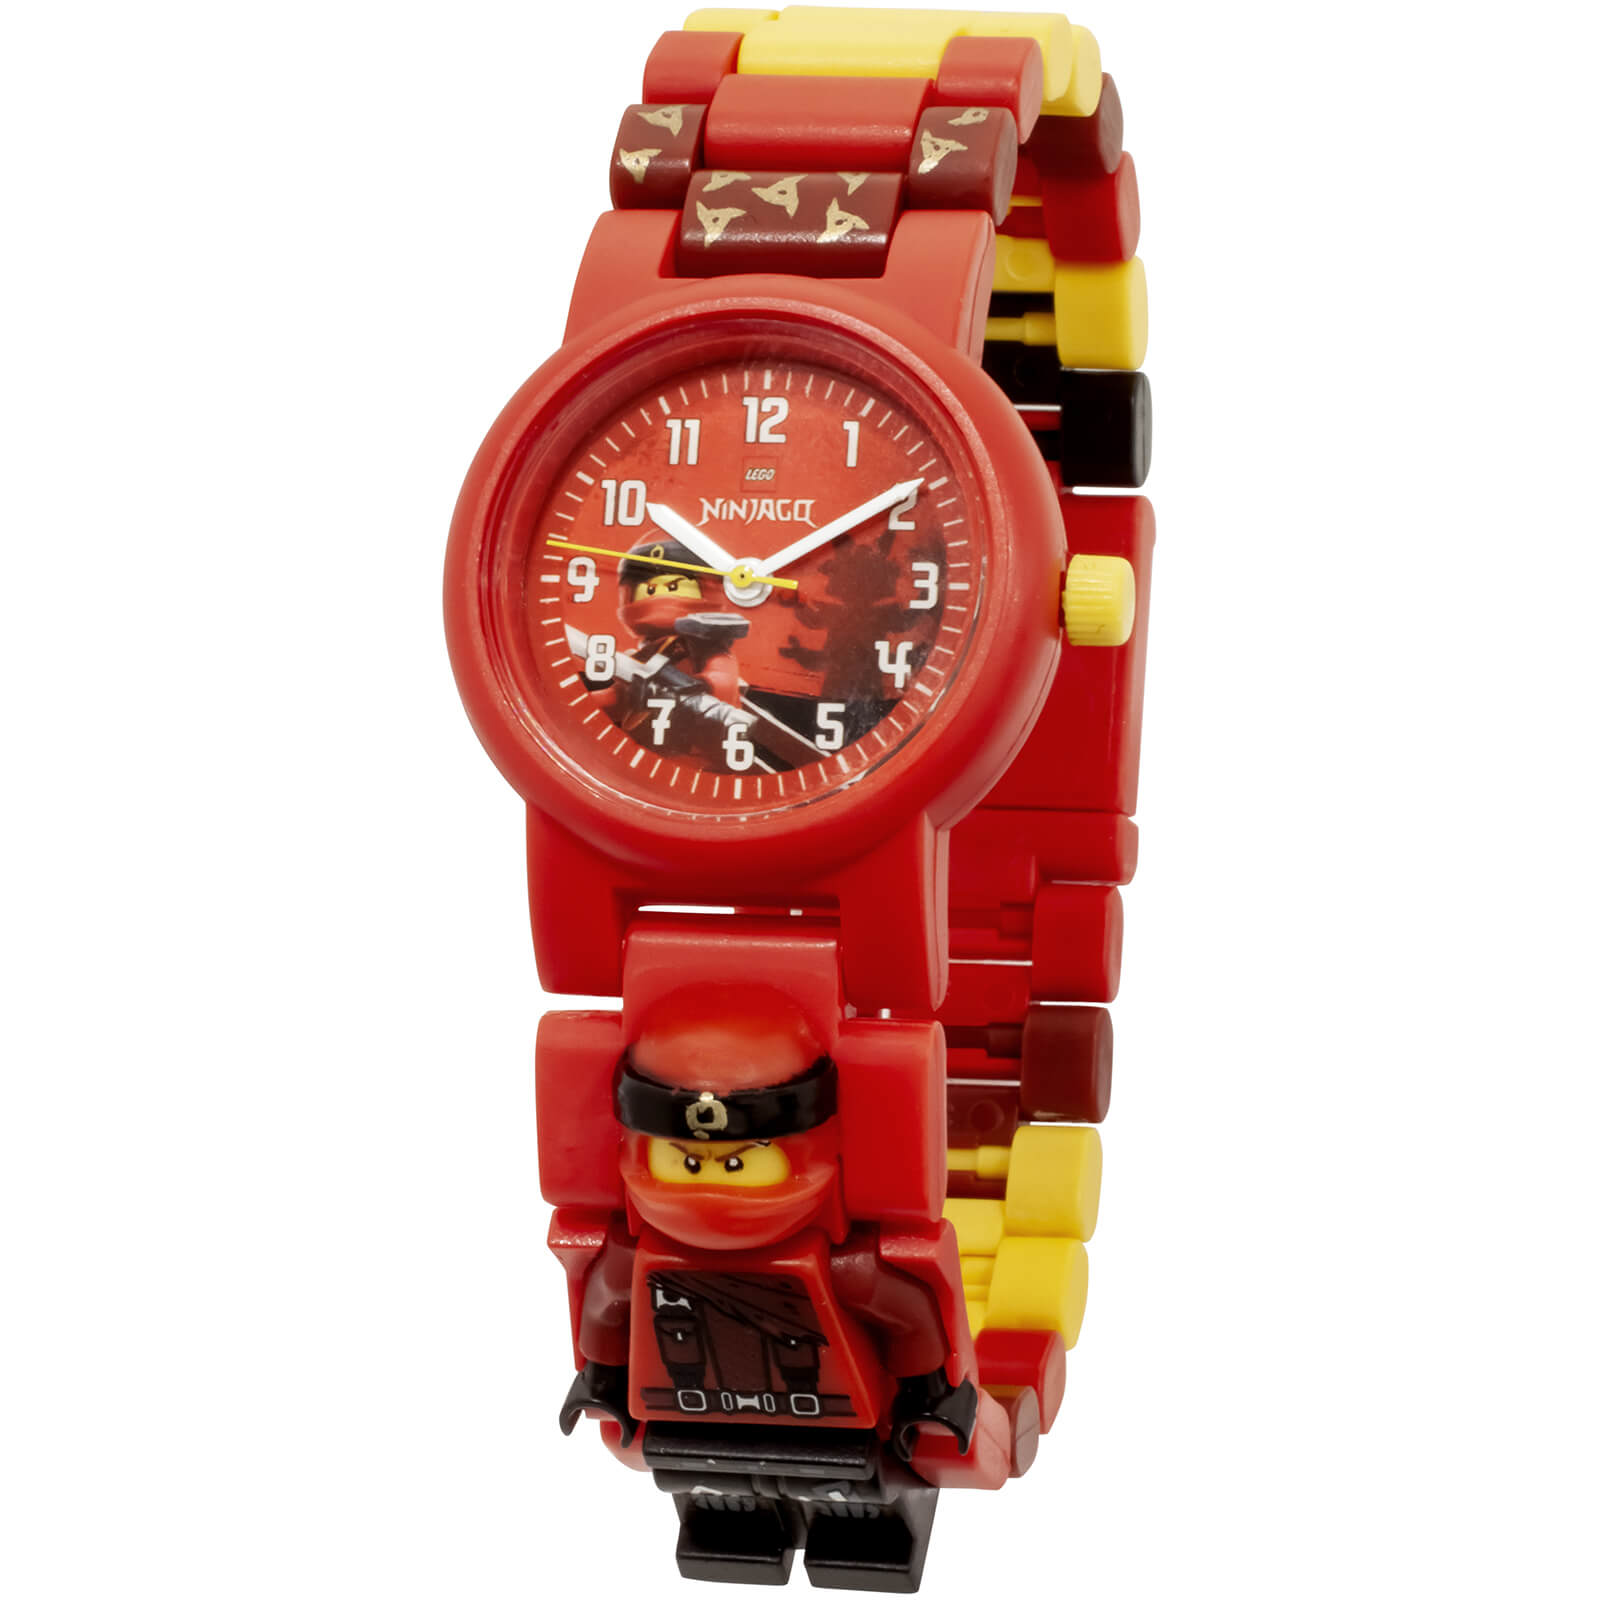 lego ninjago watch order